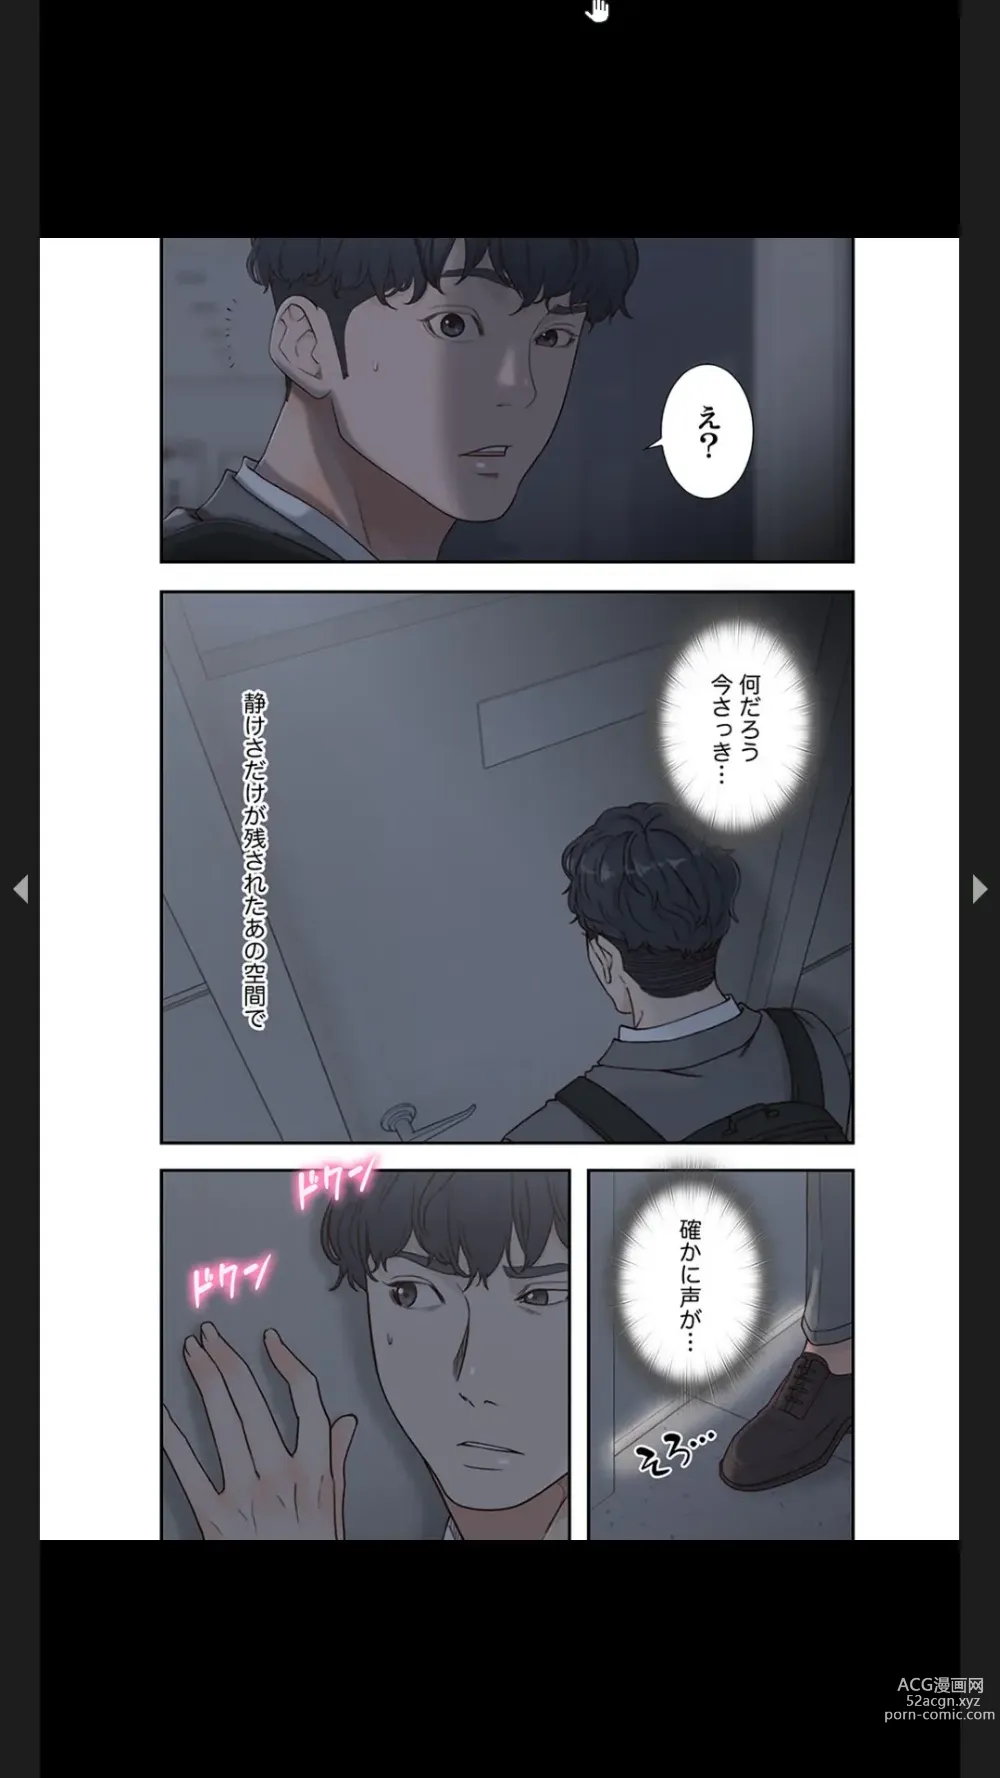 Page 113 of manga Moto Kano 1-2